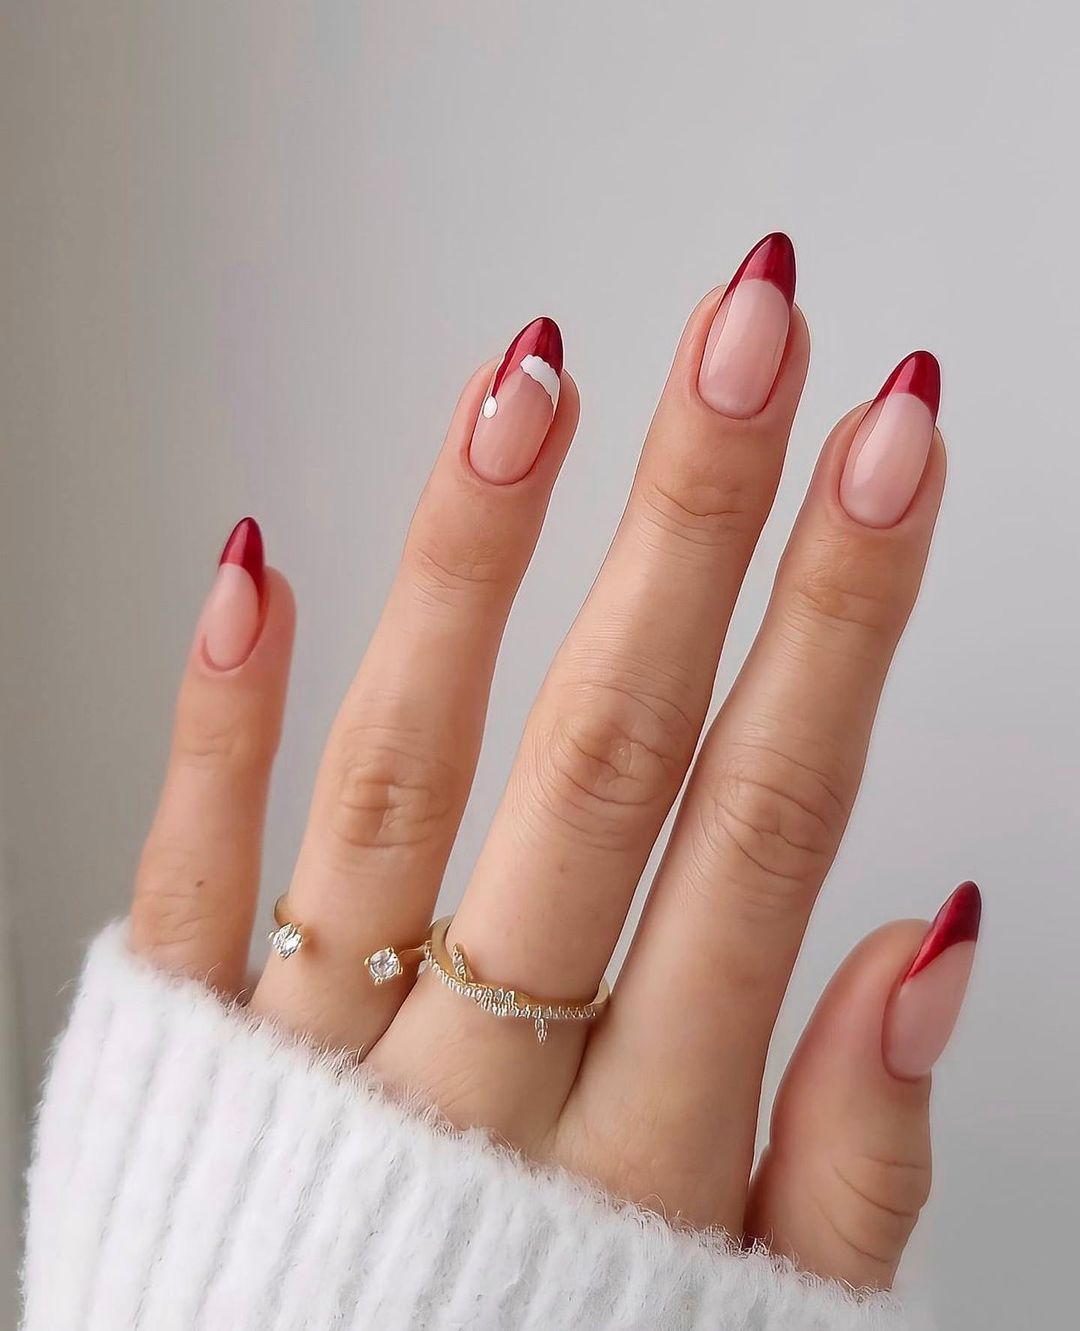 Mão com unhas com francesinha vermelha de Natal, anéis dourados em dois dedos e parte de uma blusa branca de manga comprida